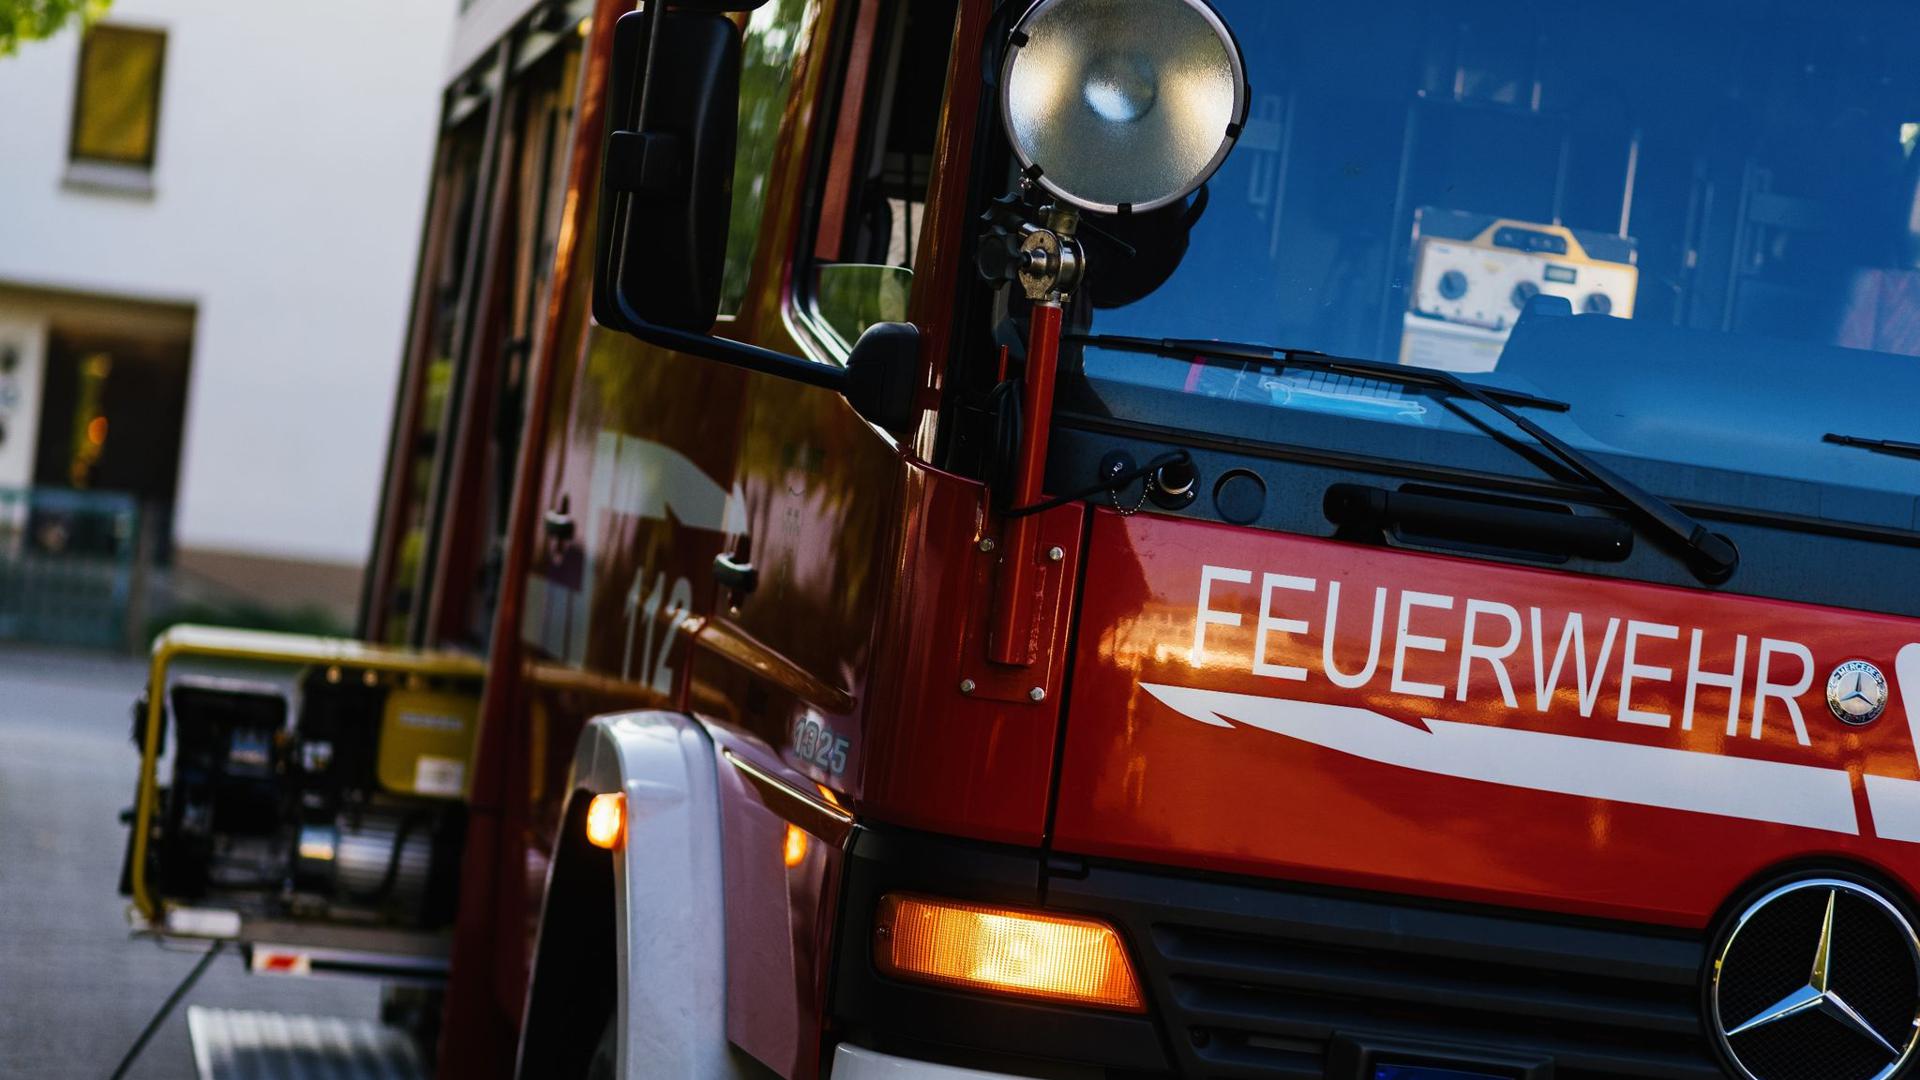 ARCHIV - Ein Einsatzfahrzeug der Feuerwehr. Foto: Philipp von Ditfurth/dpa/Symbolbild